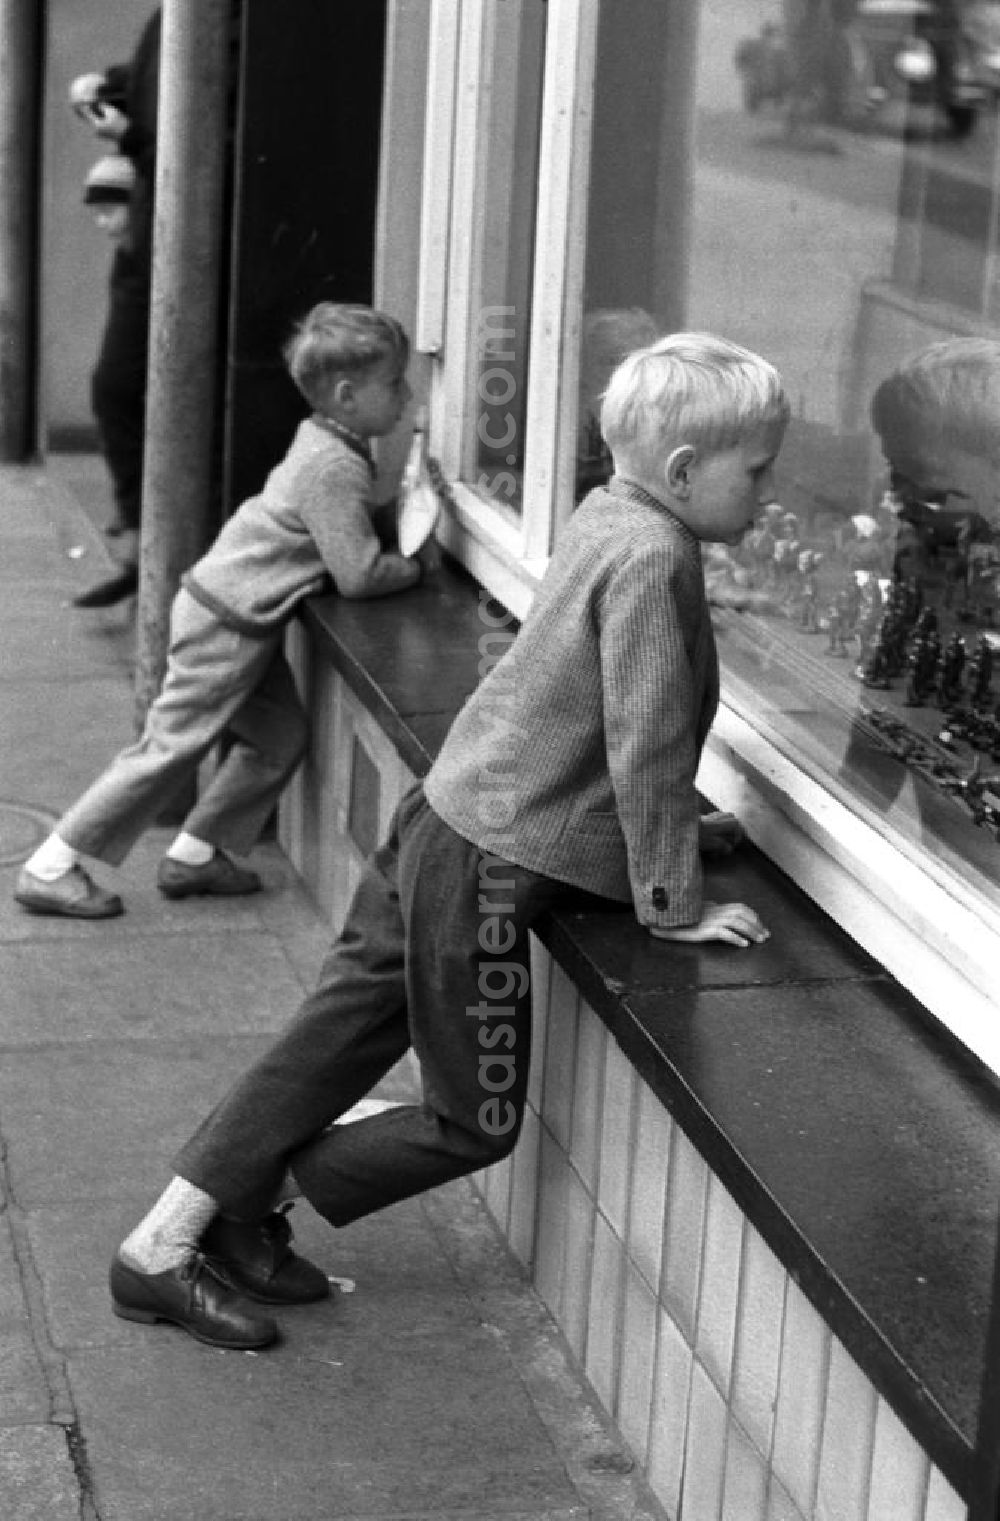 : Dresden 12.6.1962 Zwei Jungs schauen neugierig durch das Schaufenster eines Dresdner Spielwarengeschäftes auf die ausgestellten Spielfiguren.